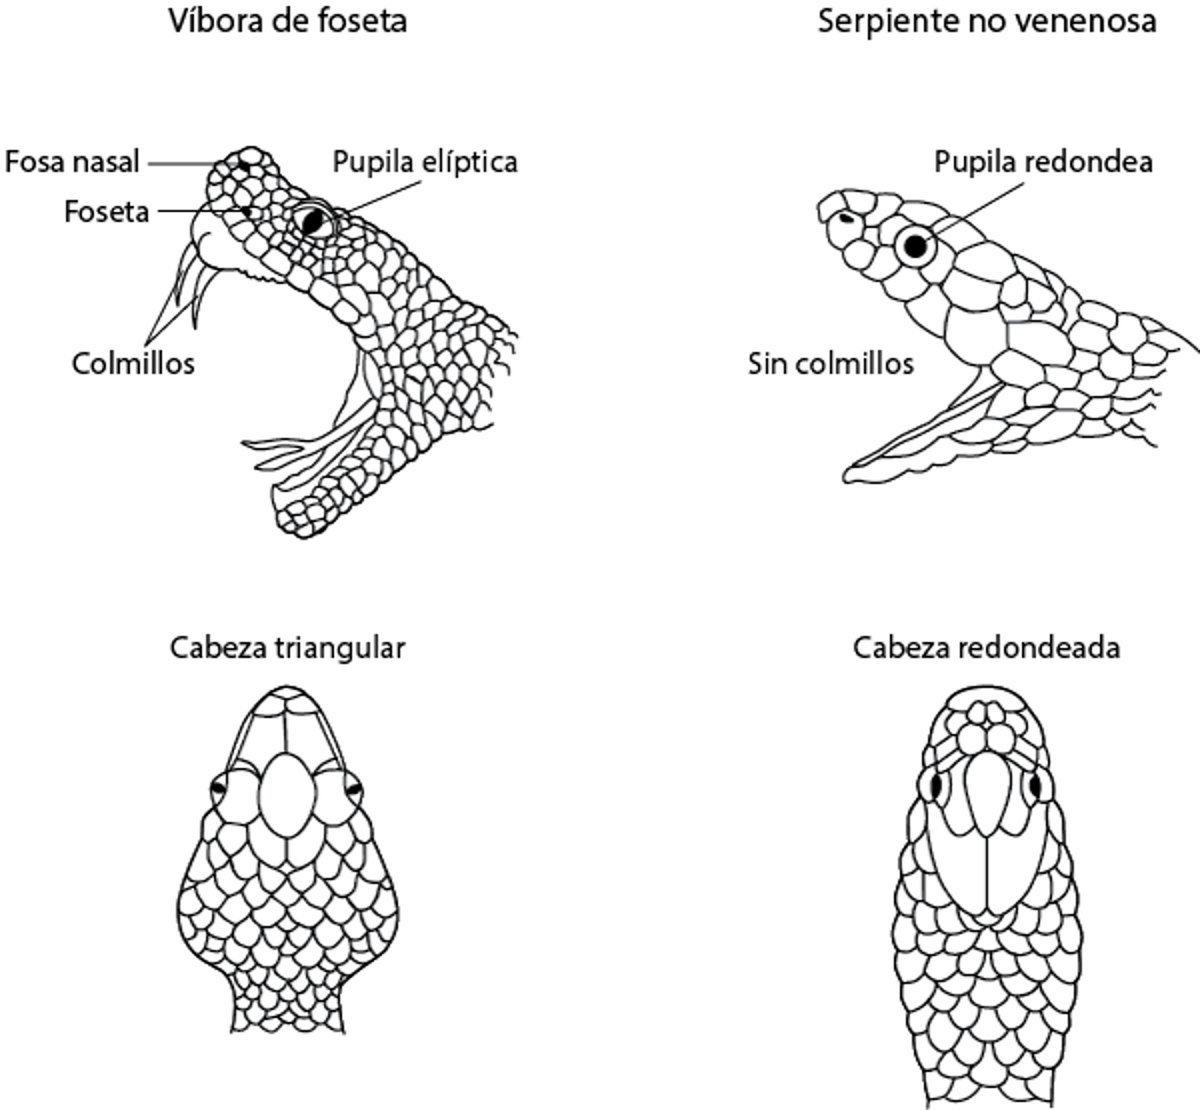 Identificación de las serpientes de foseta